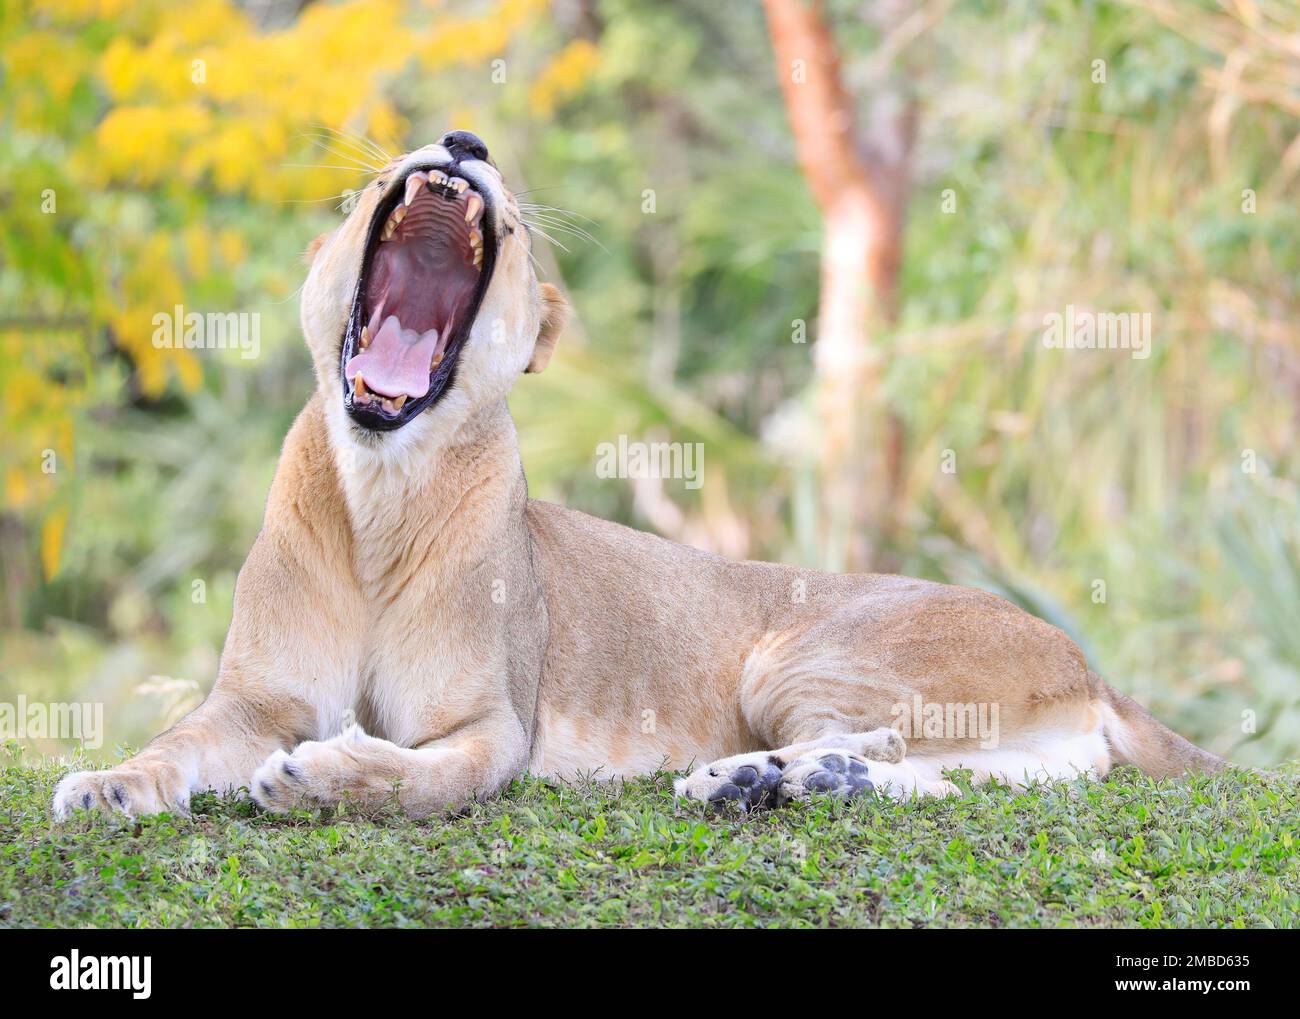 Löwin-Porträt, das mit offenem Mund auf dem Gras liegt Stockfoto